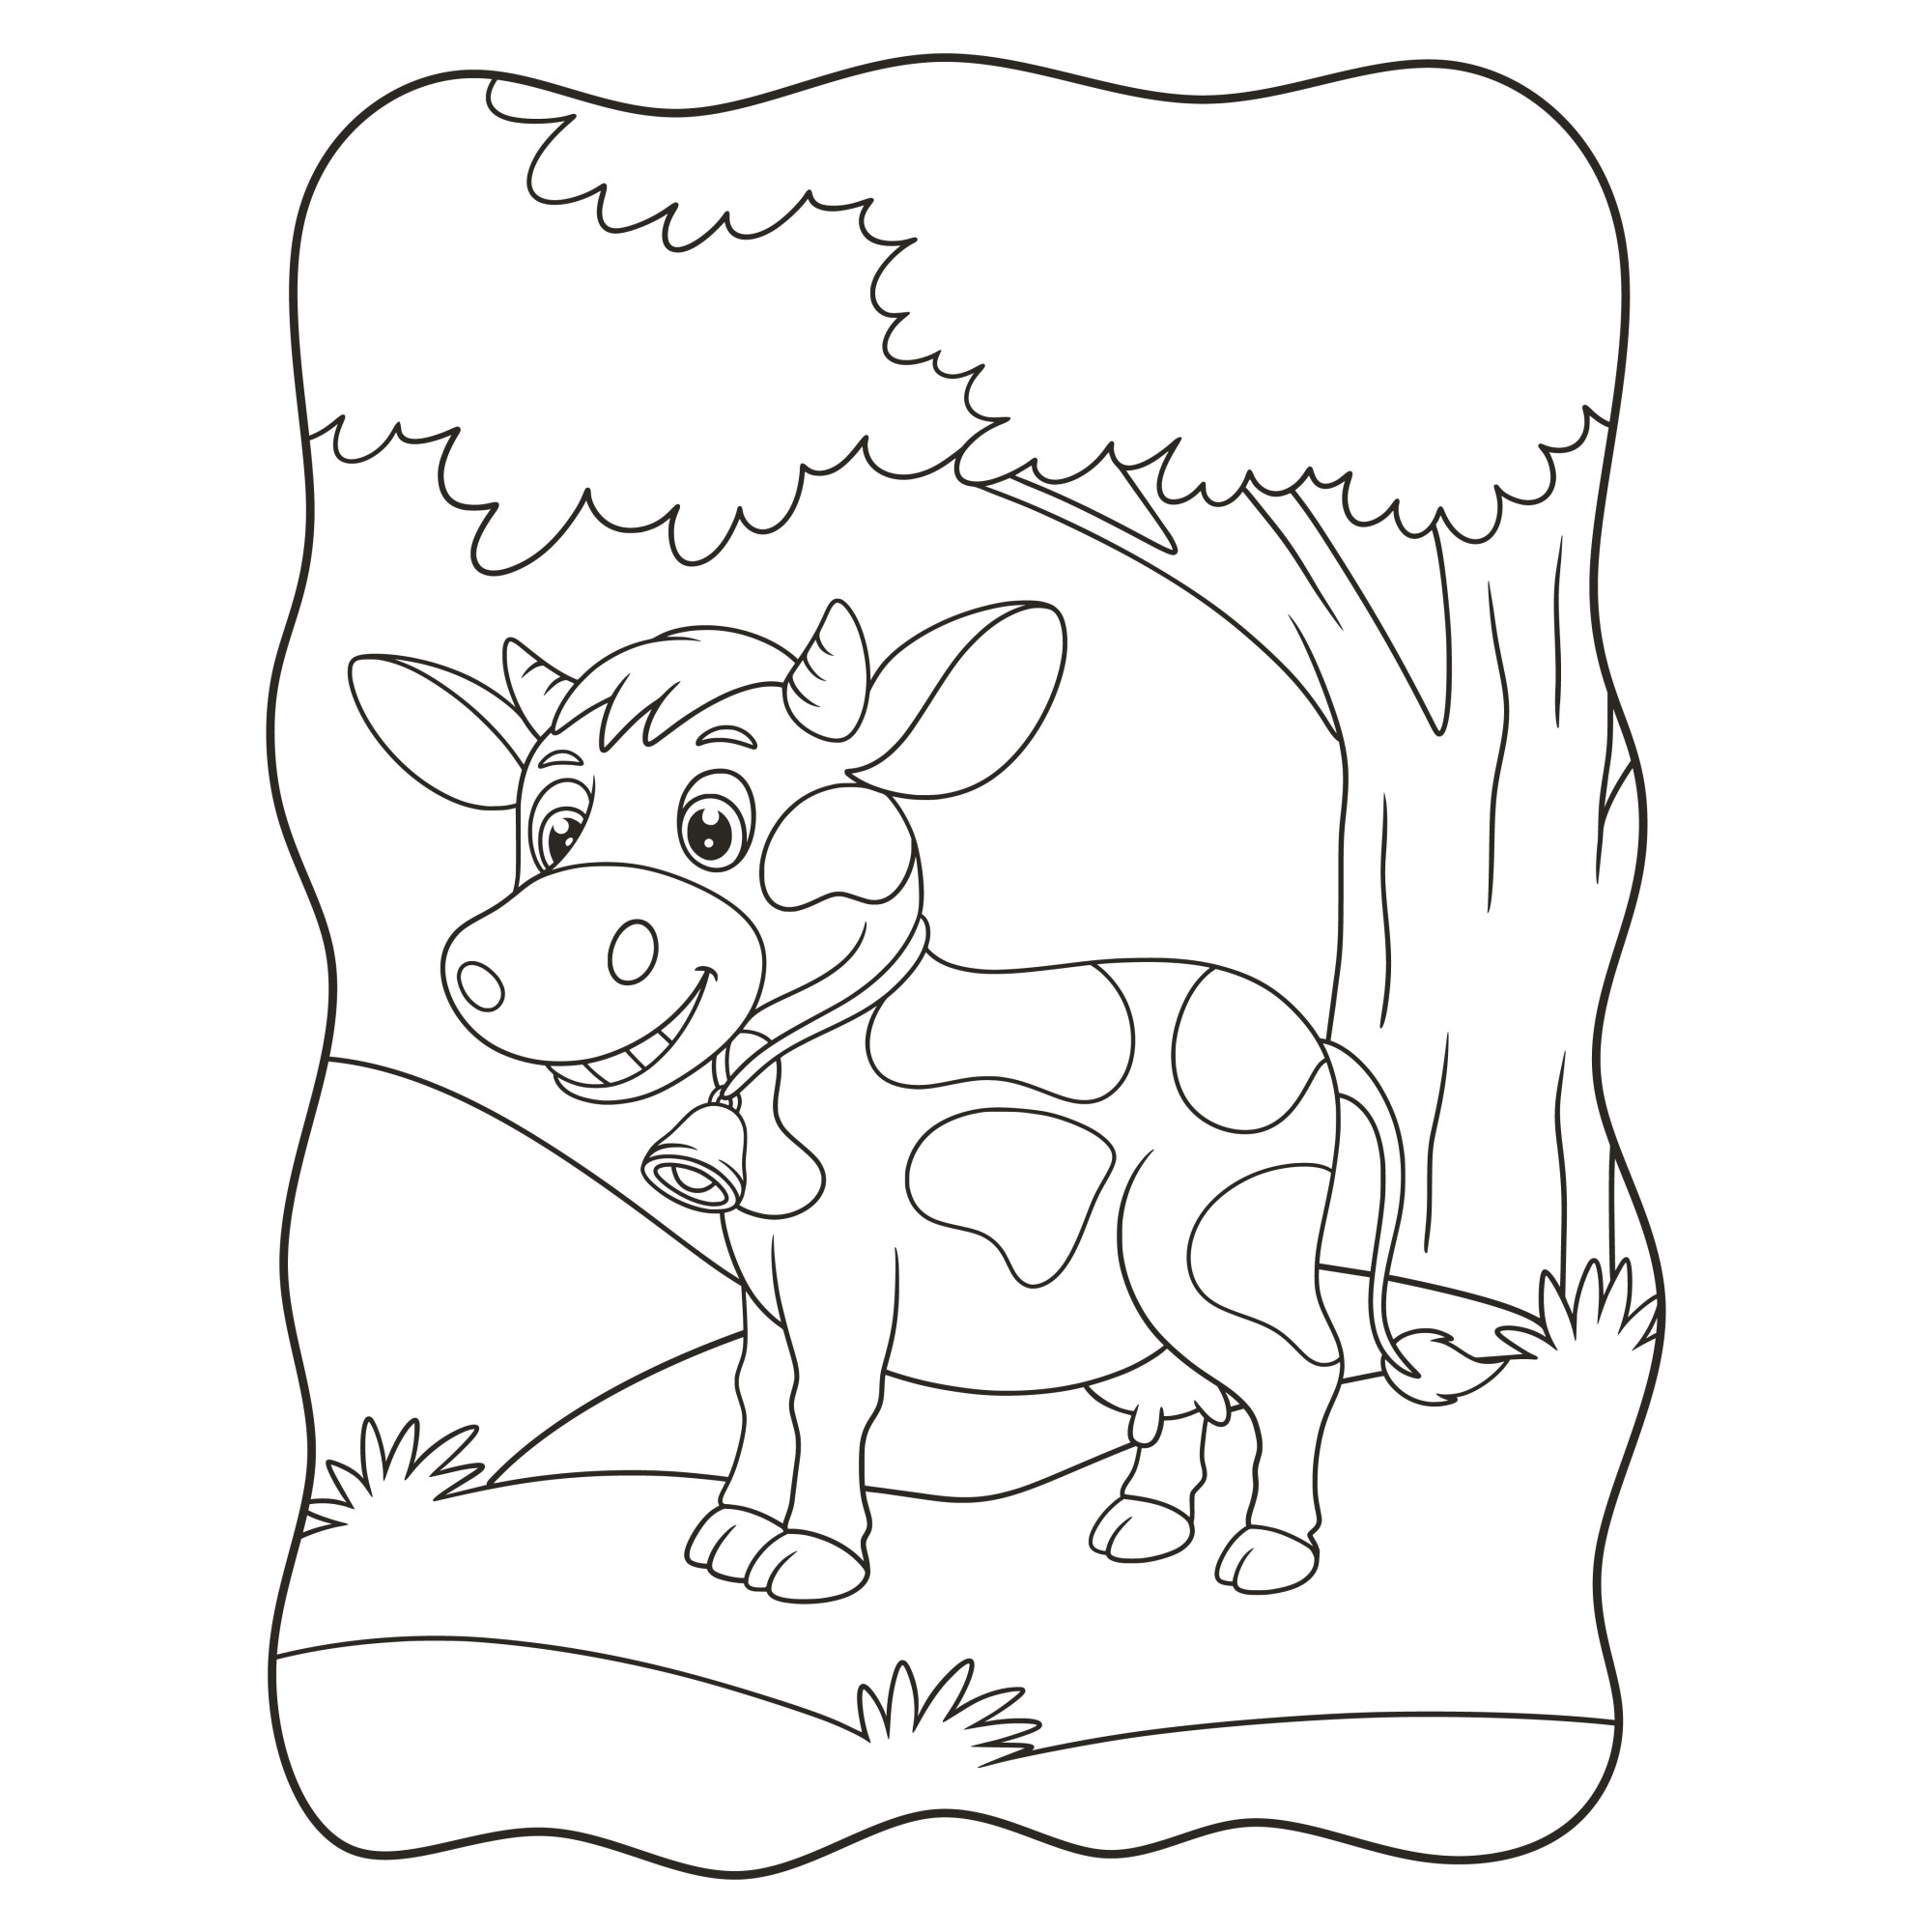 Раскраска для детей: веселая корова с колокольчиком на шее стоит у дерева в лесу